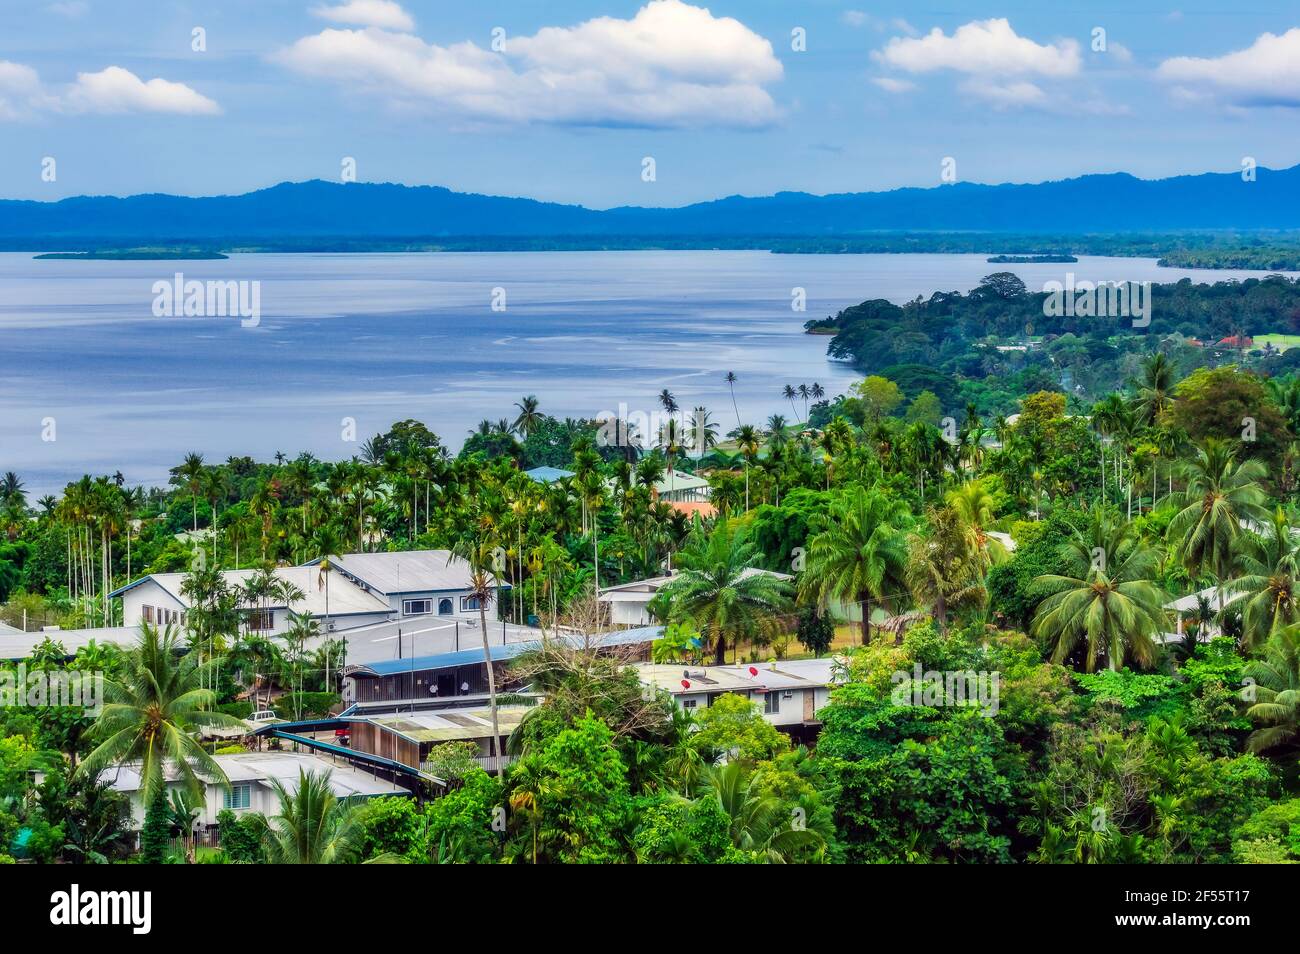 Papouasie-Nouvelle-Guinée, province de Milne Bay, Alotau, ville côtière entourée de palmiers verts Banque D'Images